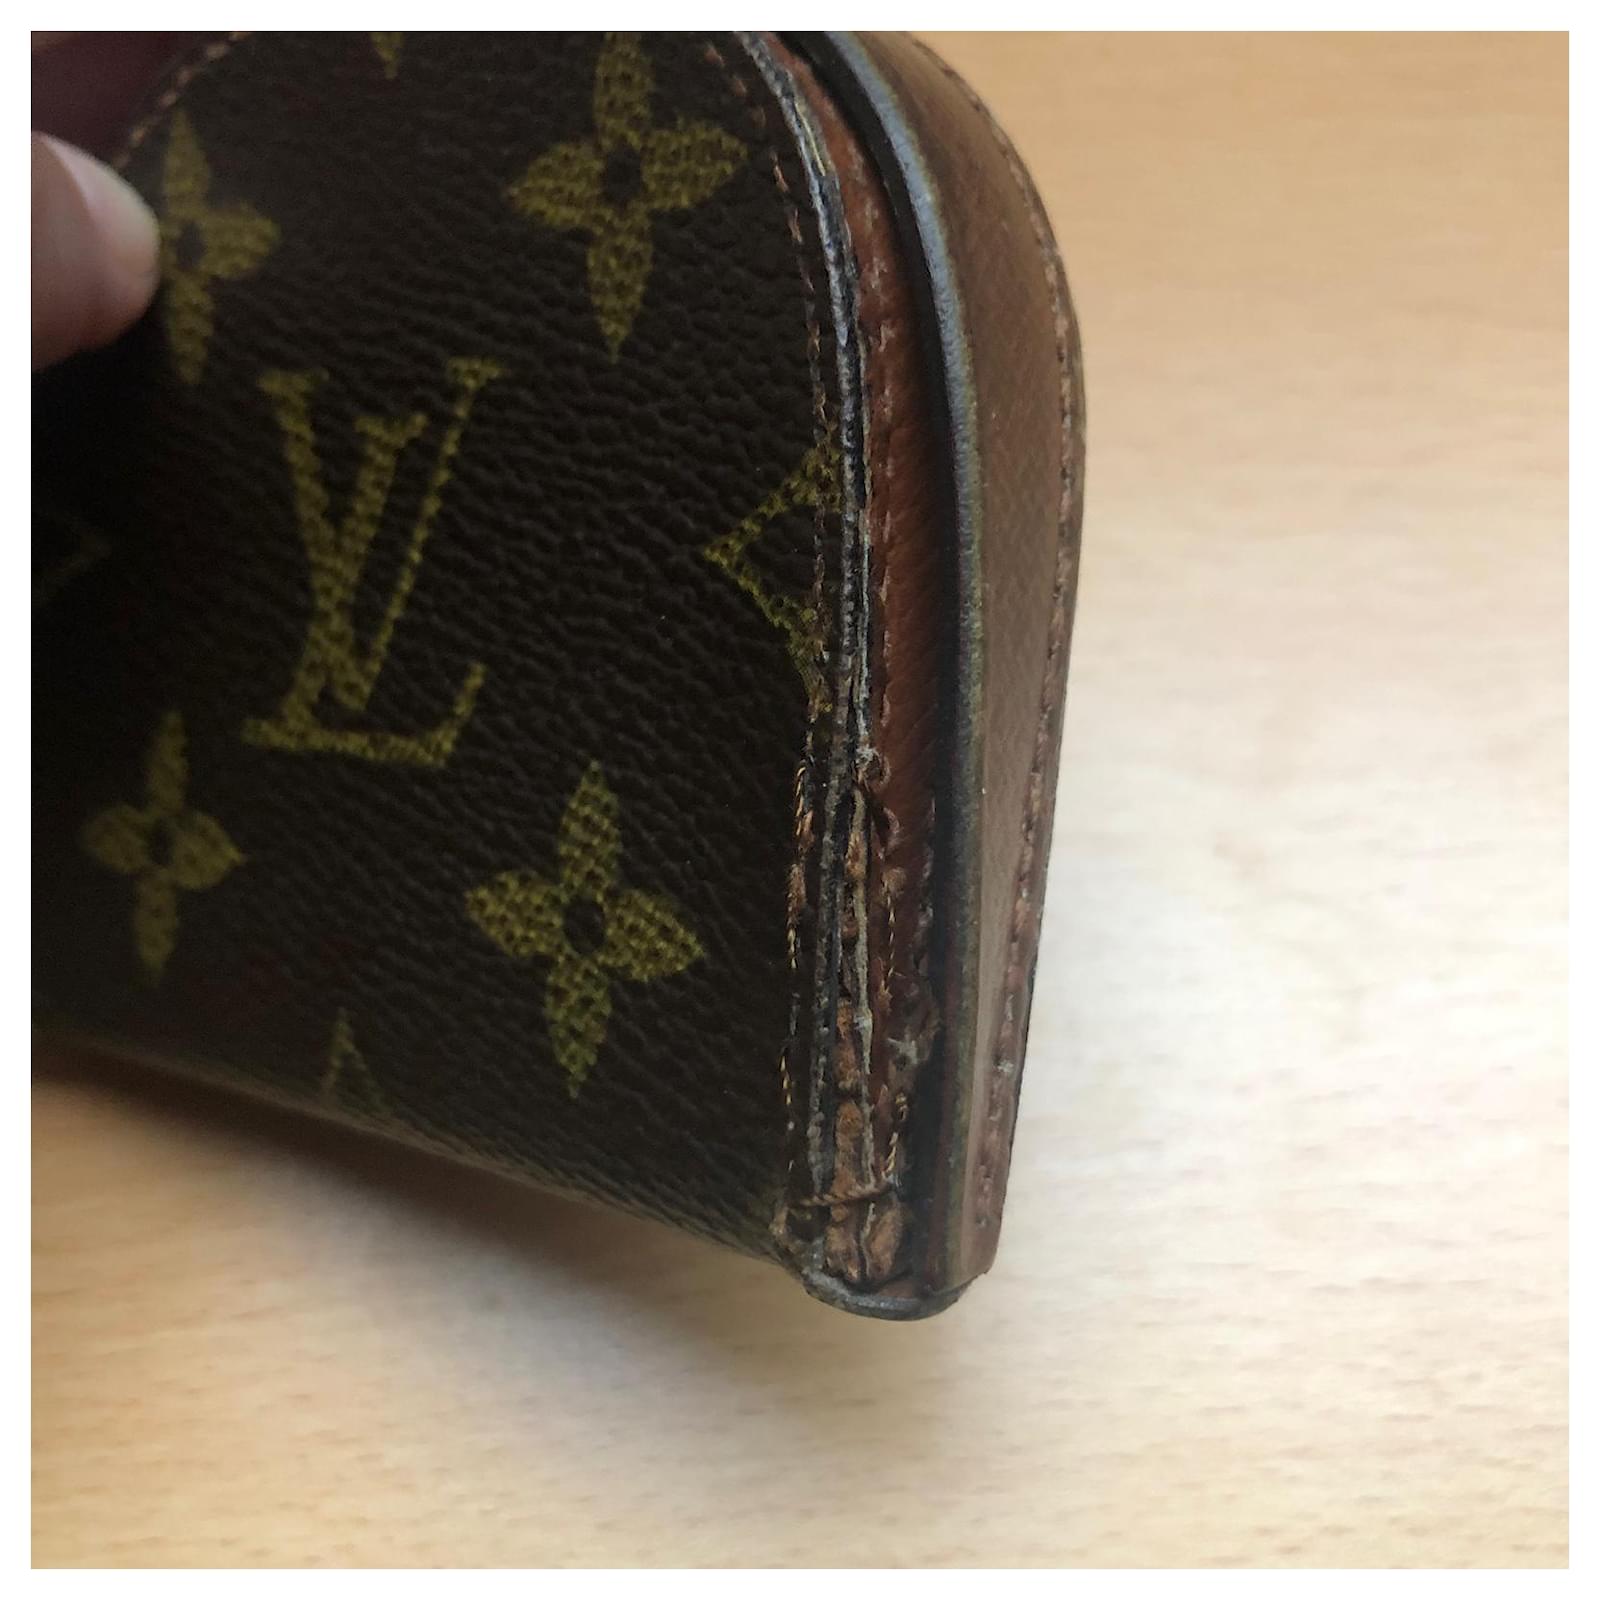 Portemonnaies / Geldbeutel in Braun von Louis Vuitton für Herren